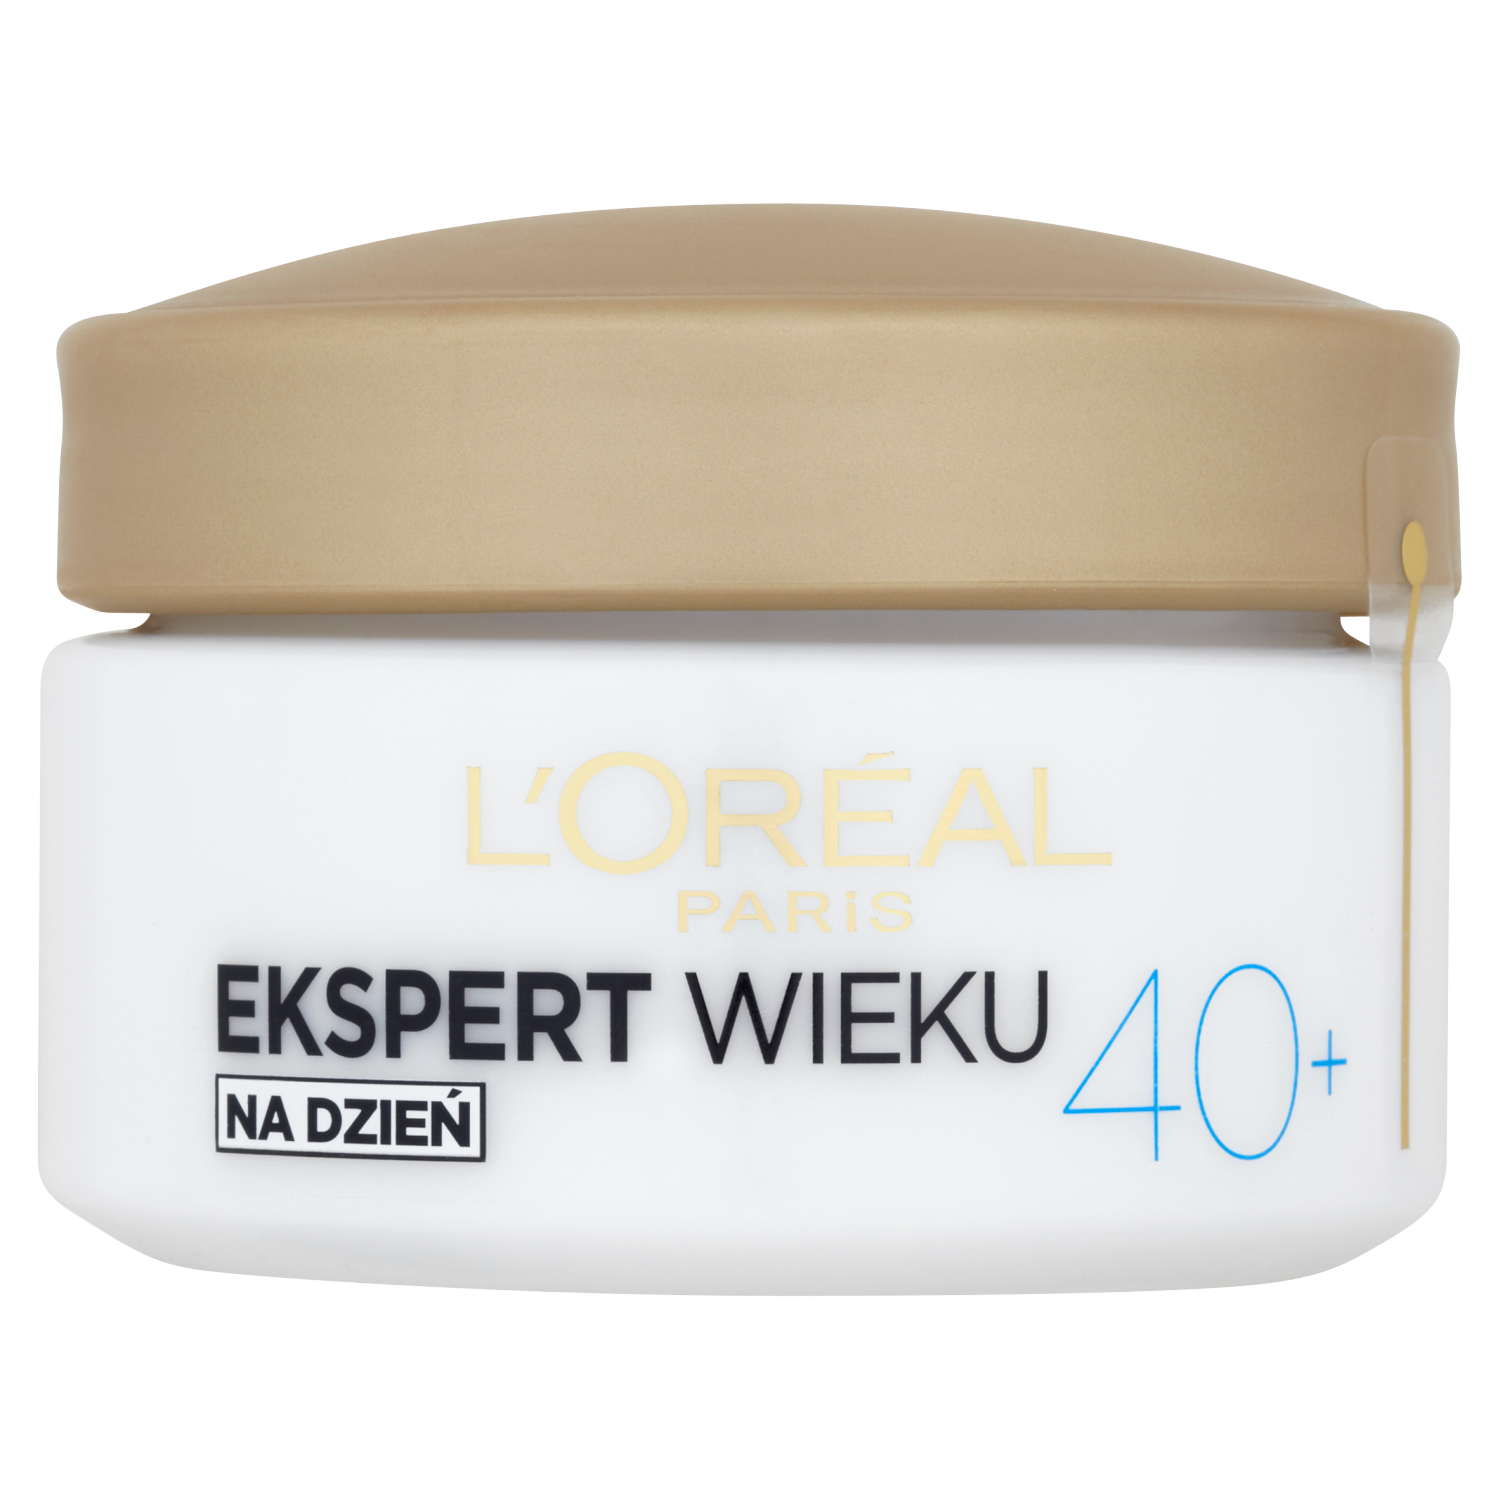 L'Oréal Paris Ekspert Wieku przeciwzmarszczkowy krem wygładzający na dzień  40+, 50 ml | hebe.pl